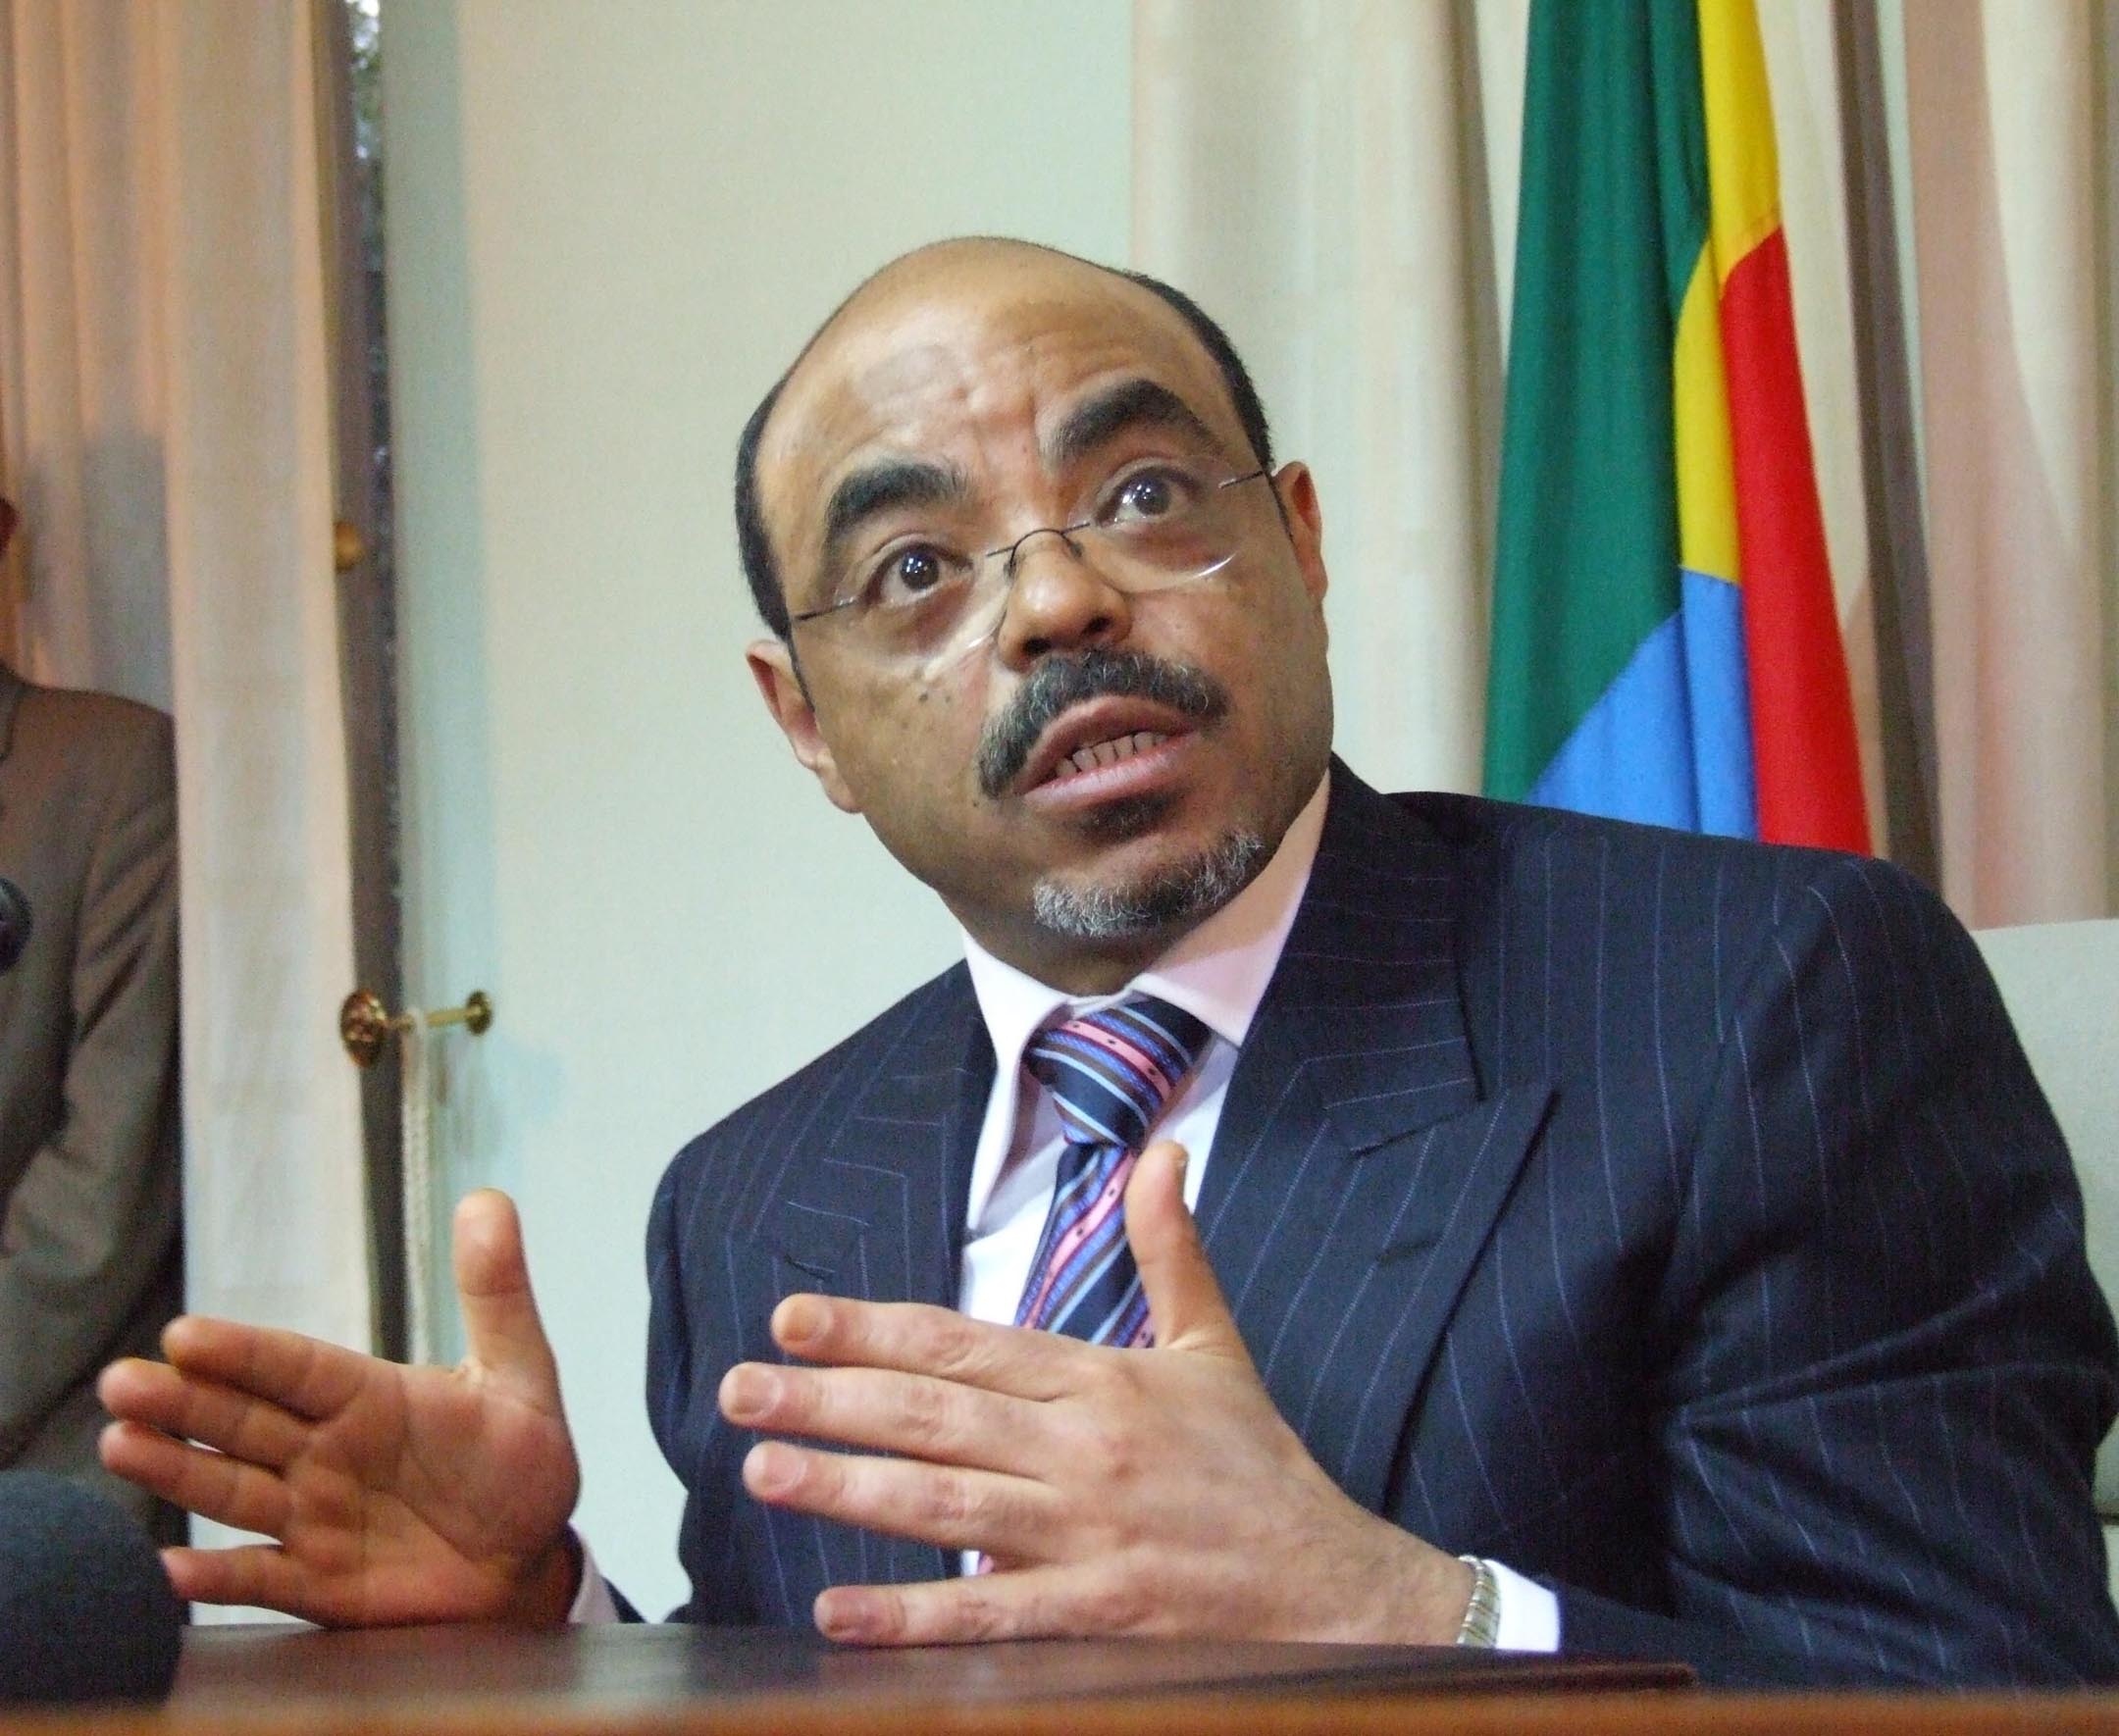 Fängelse, Meles Zenawi, Johan Persson, Martin Schibbye, Etiopien, Besök, Carl Bildt, World Economic Forum